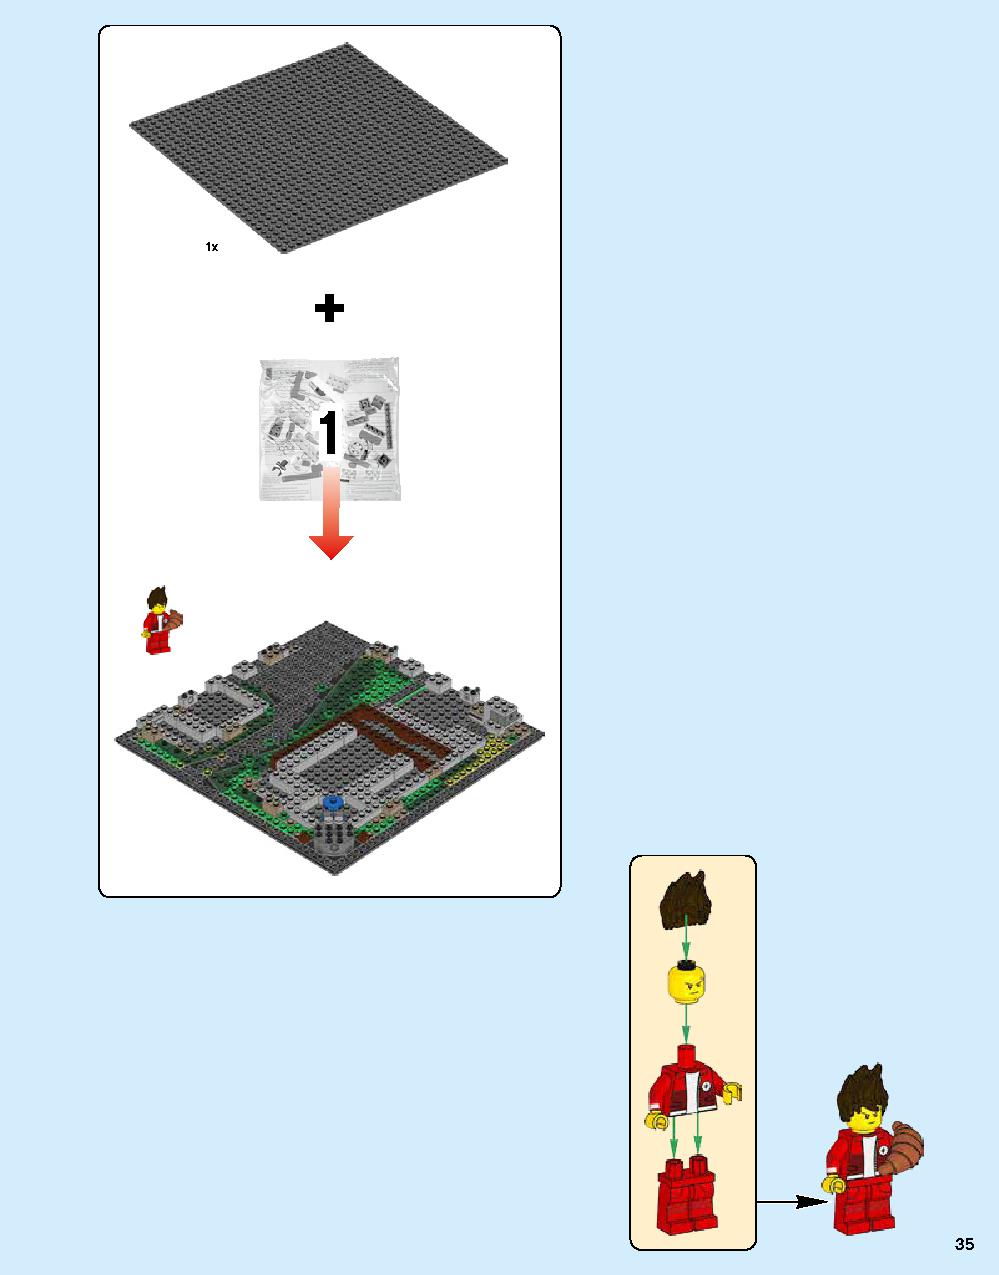 닌자고® 시티 70620 레고 세트 제품정보 레고 조립설명서 35 page